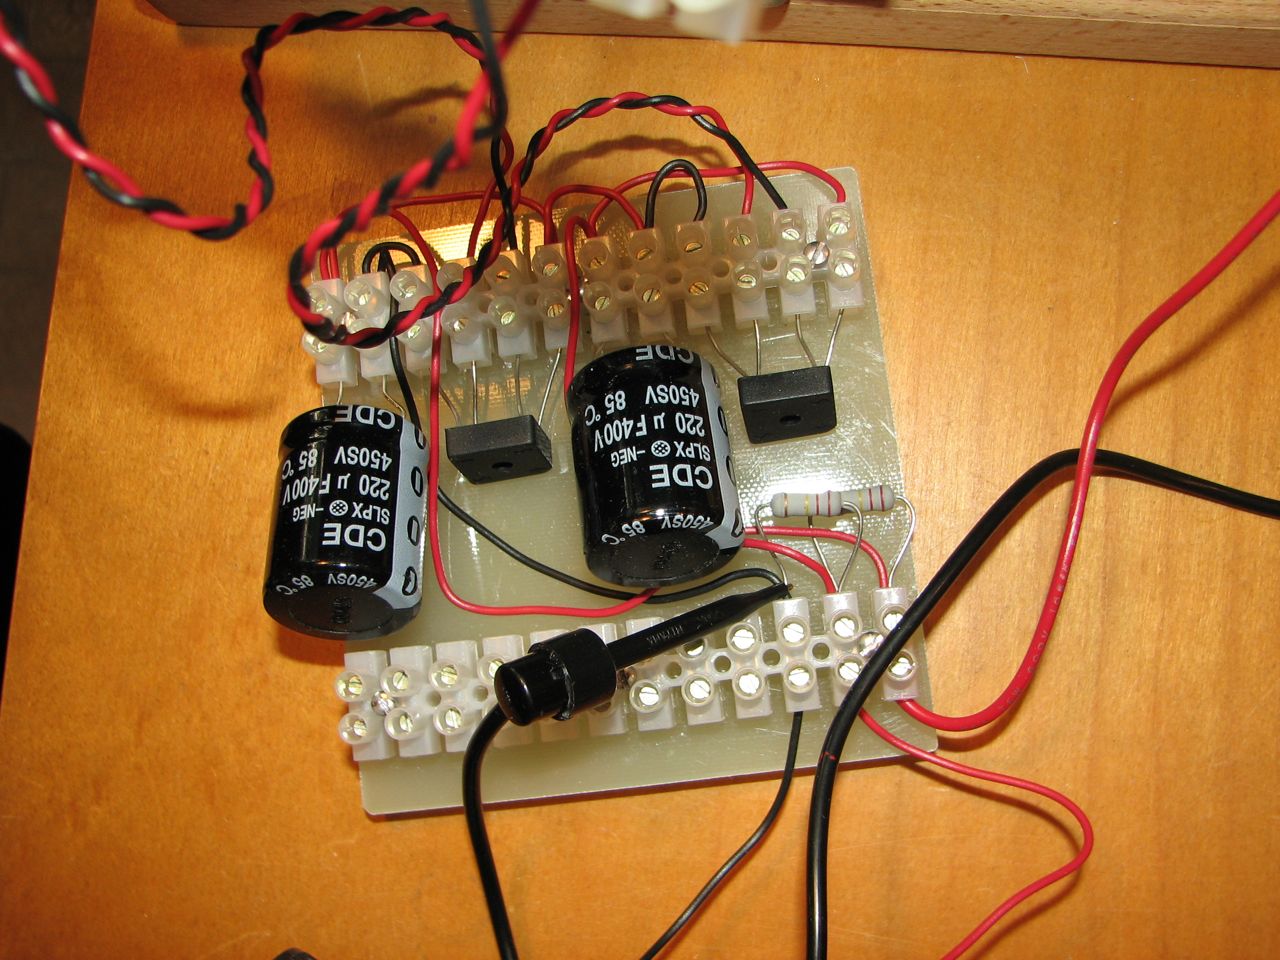 Power supply prototype